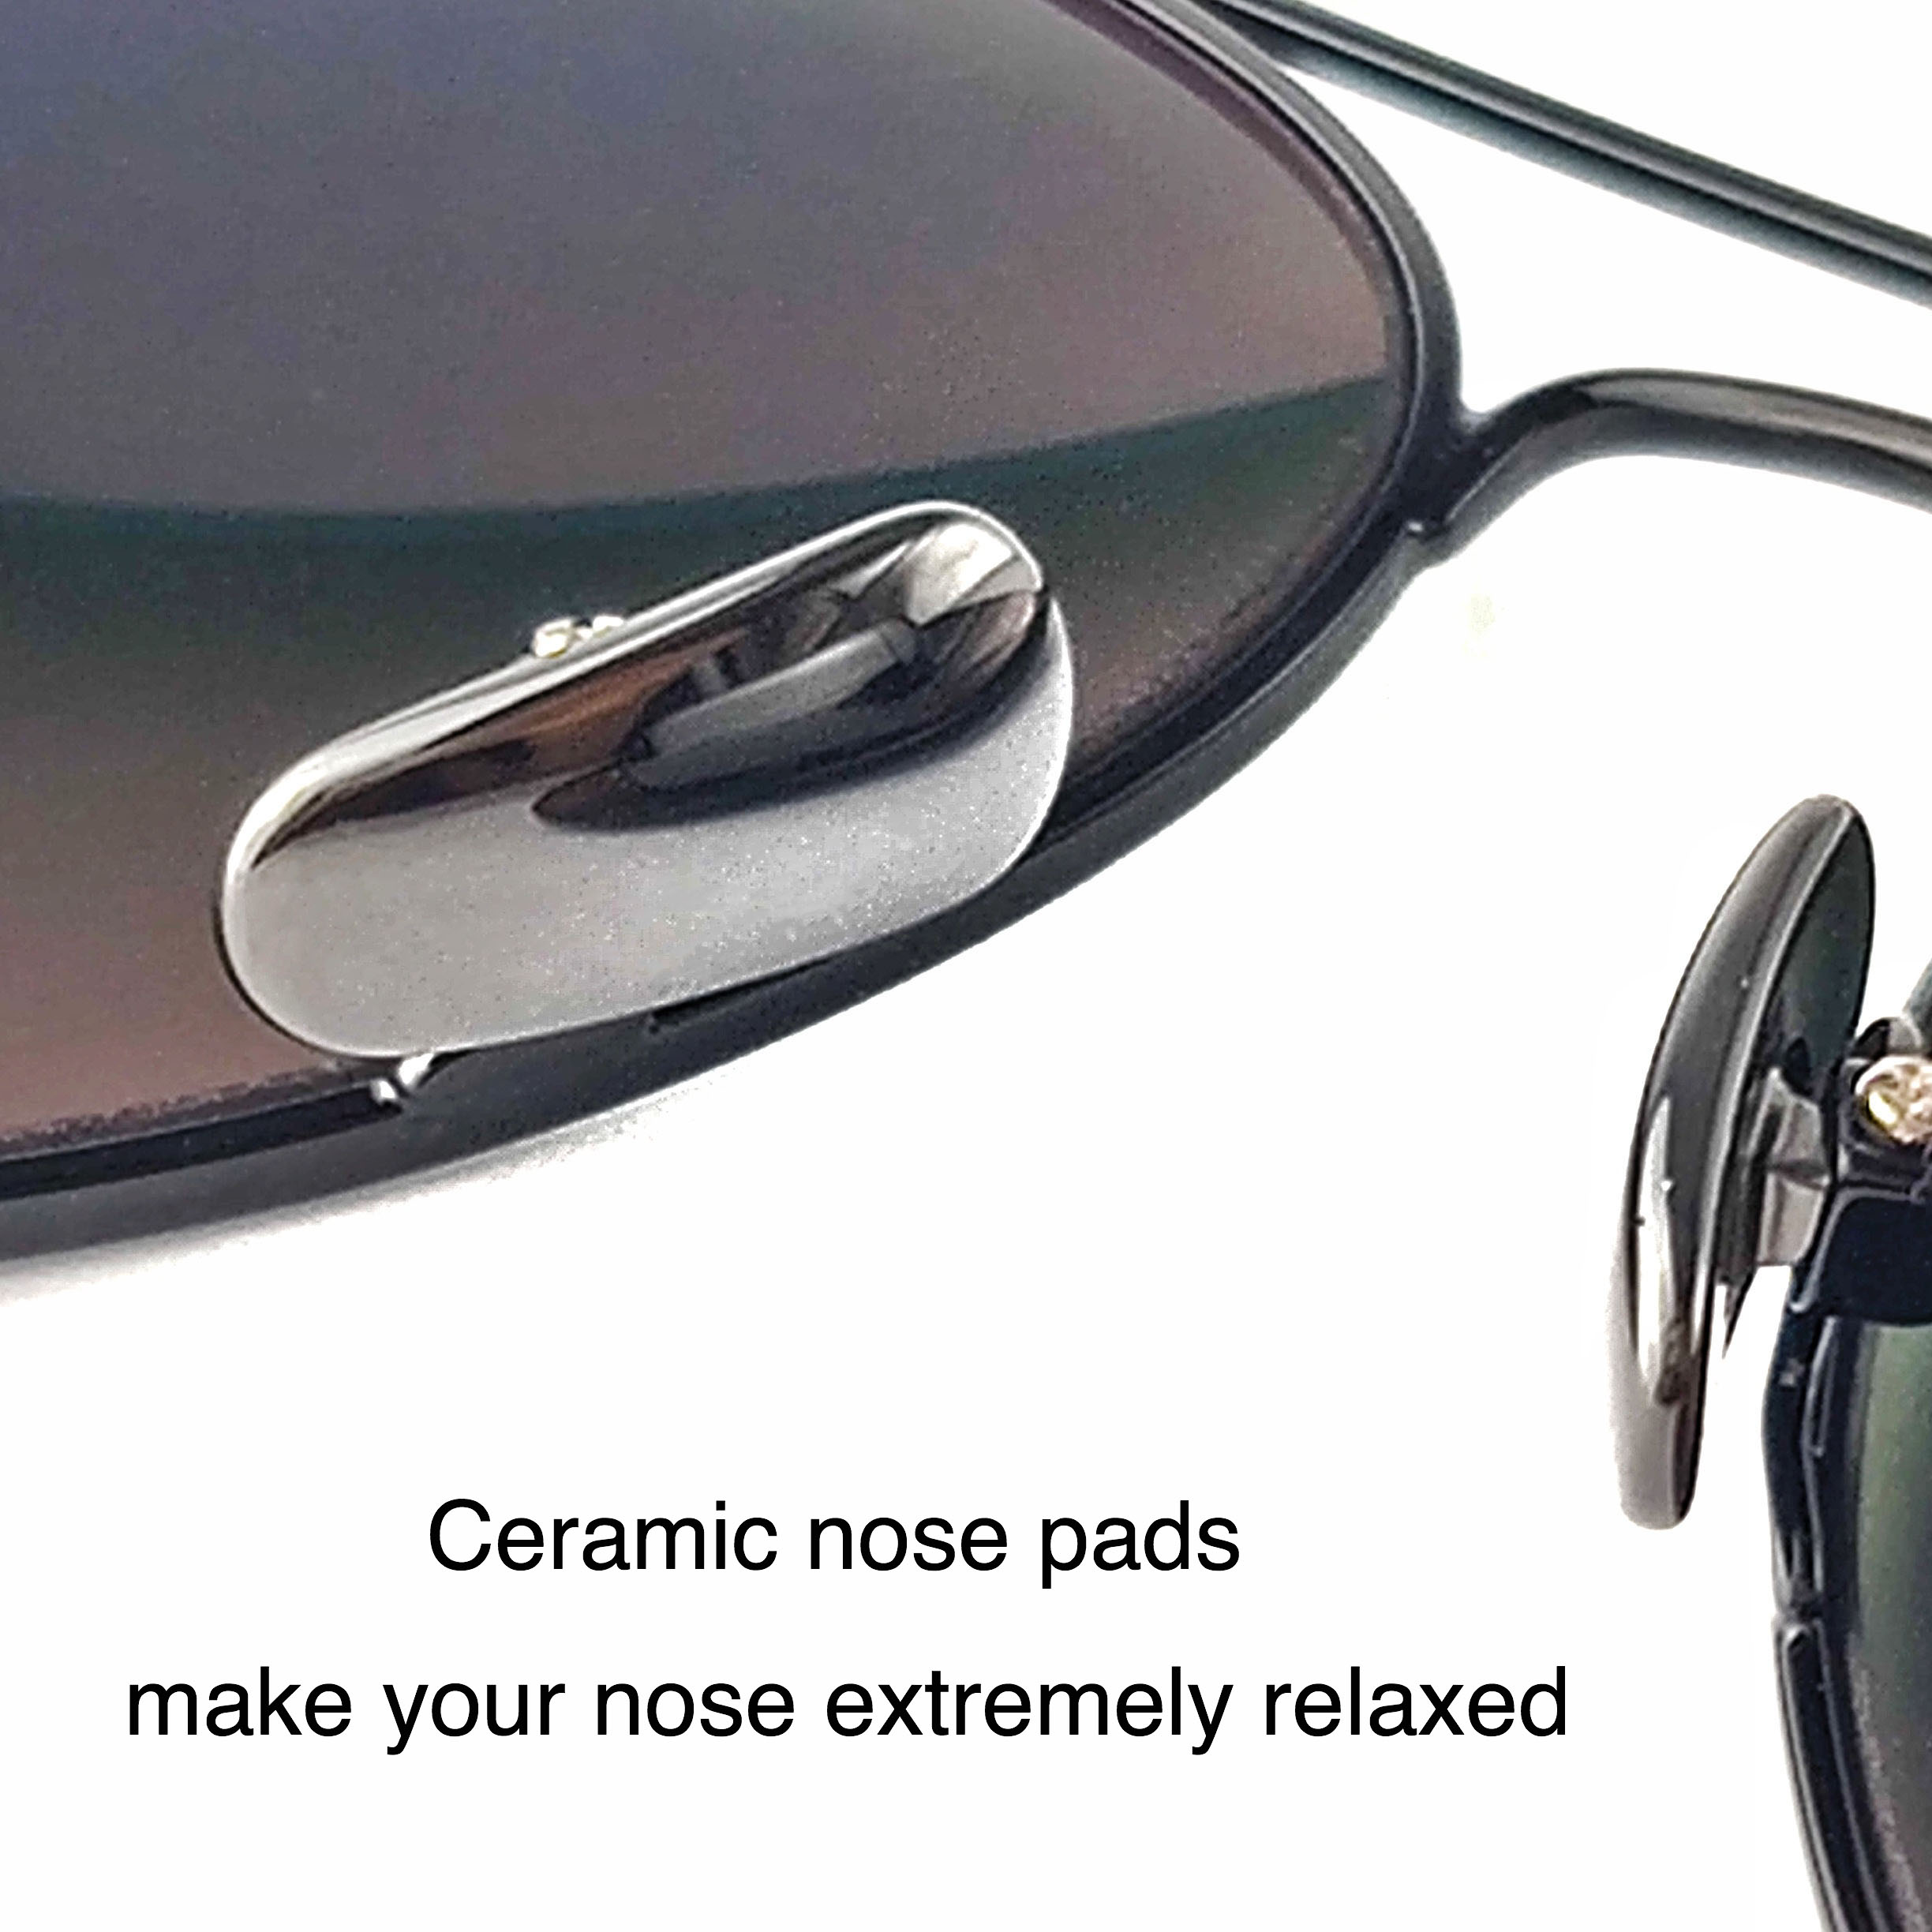 Gafas de sol con revestimiento azul River Gafas de sol personalizadas con logotipo Diseñe sus propios marcos de gafas en línea